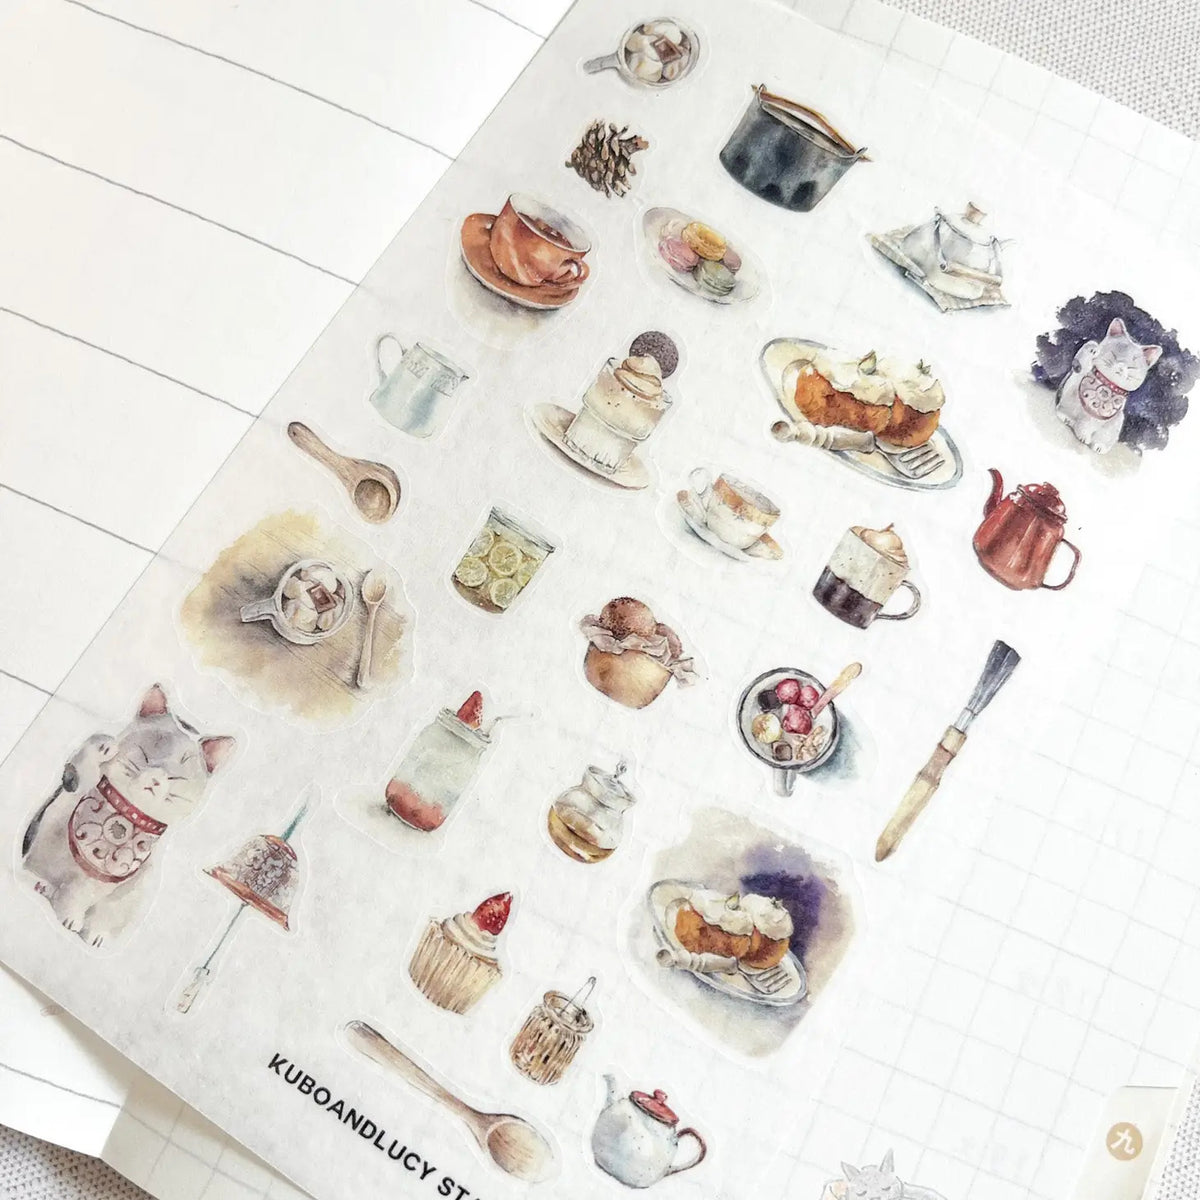 Kuboandlucy Stationery Co. Japan Things Washi Sticker Sheet